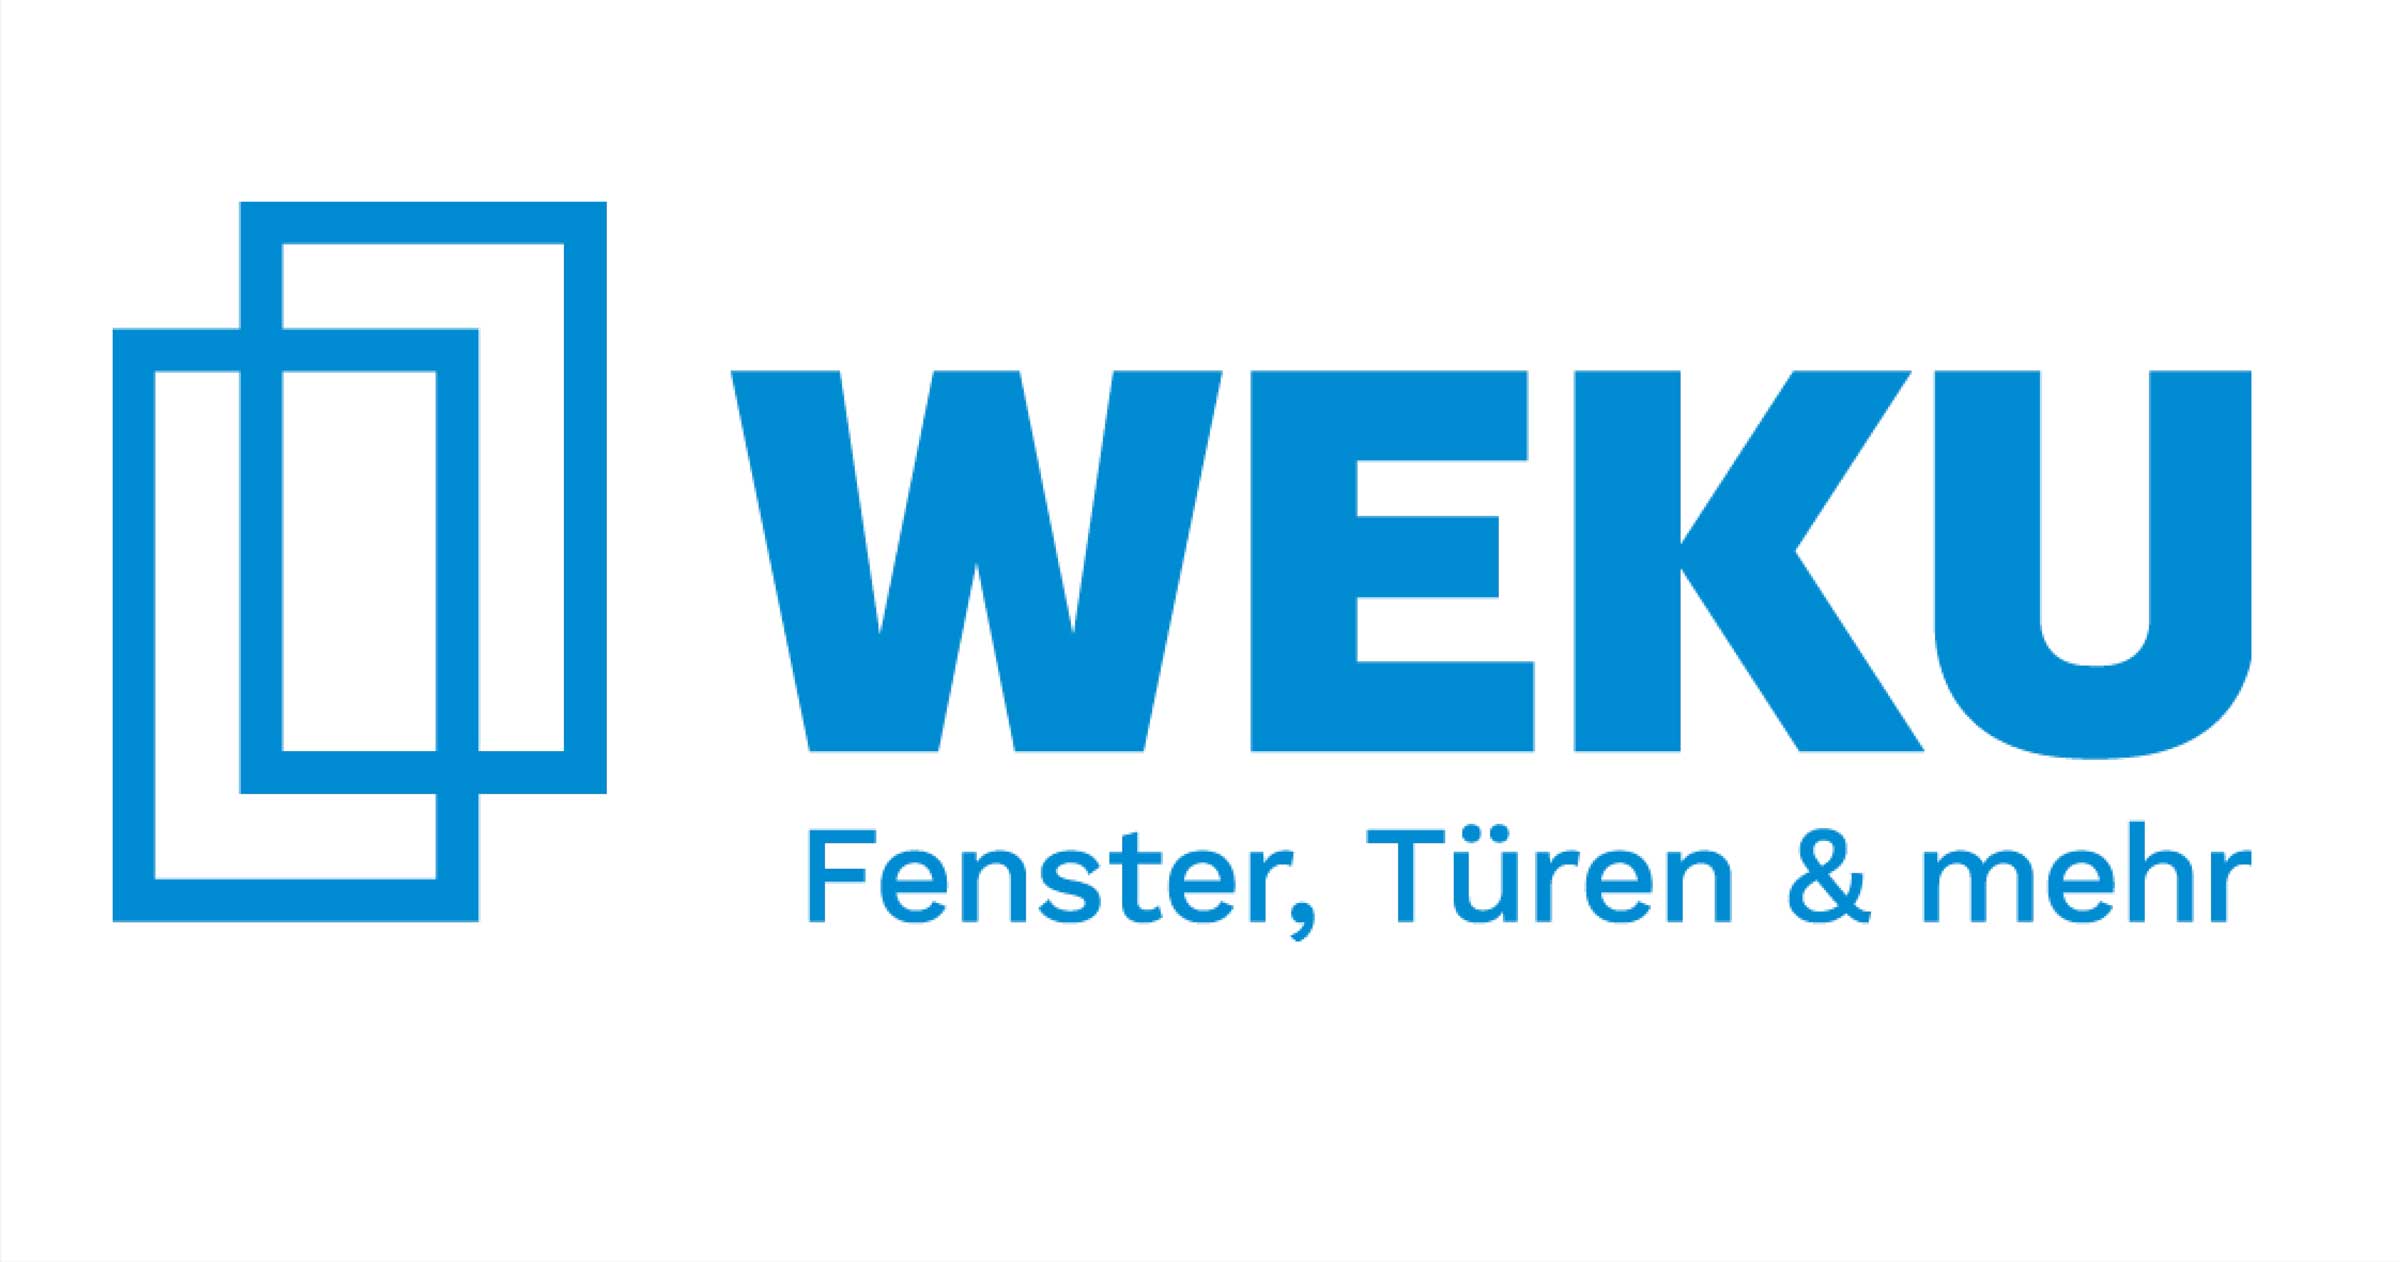 WEKU Logo